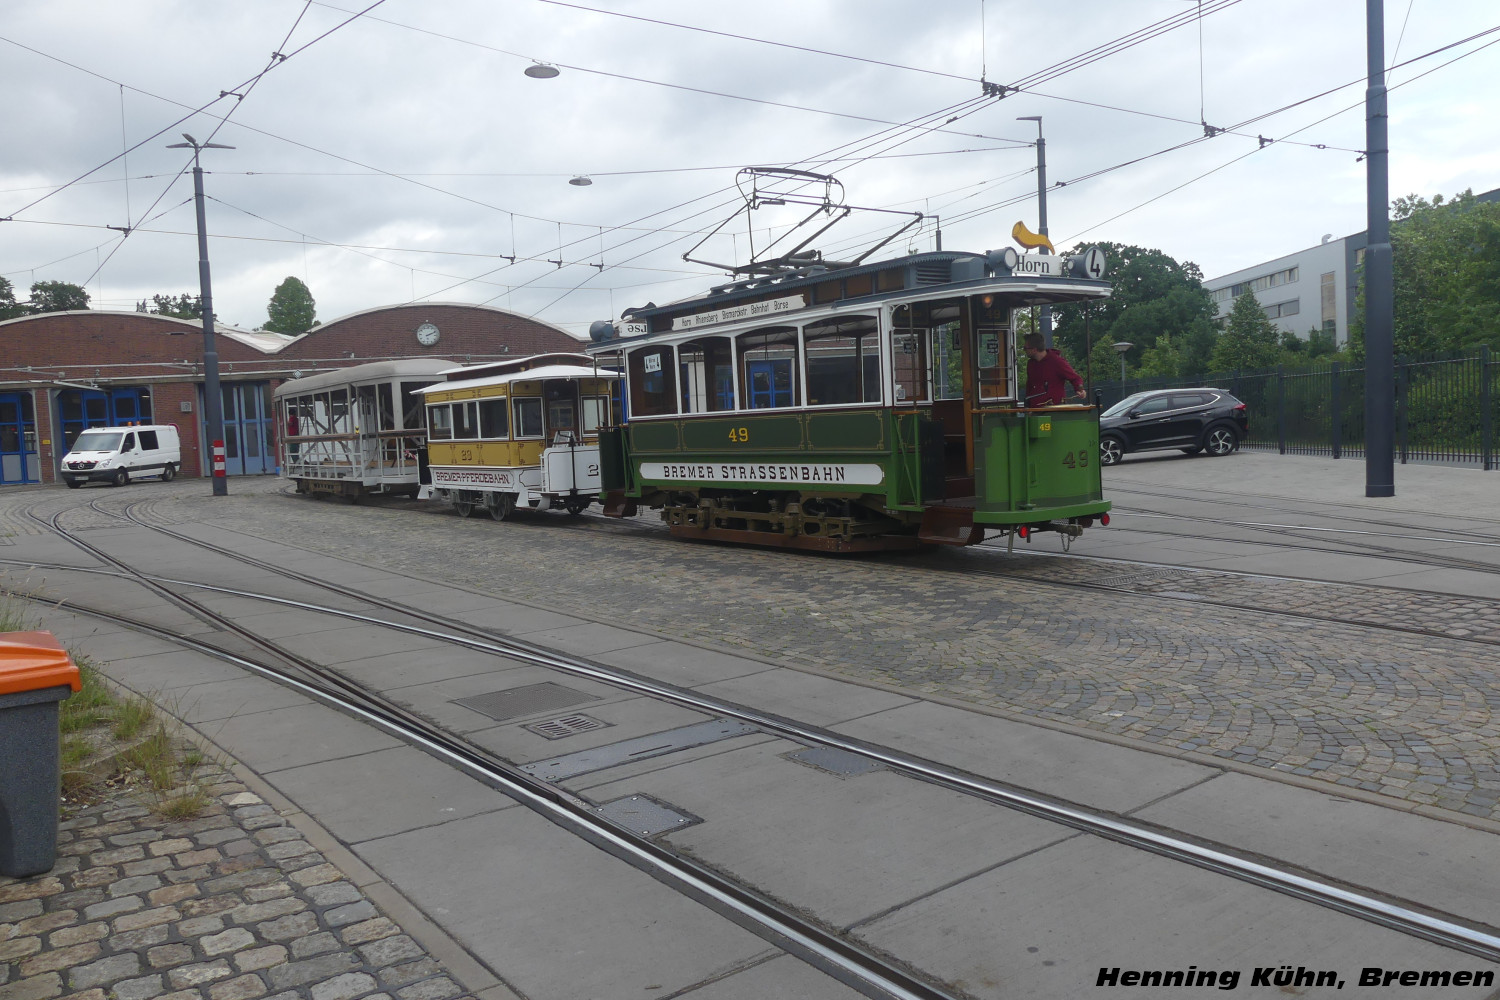 T2 Bremen (offene Plattform) #49